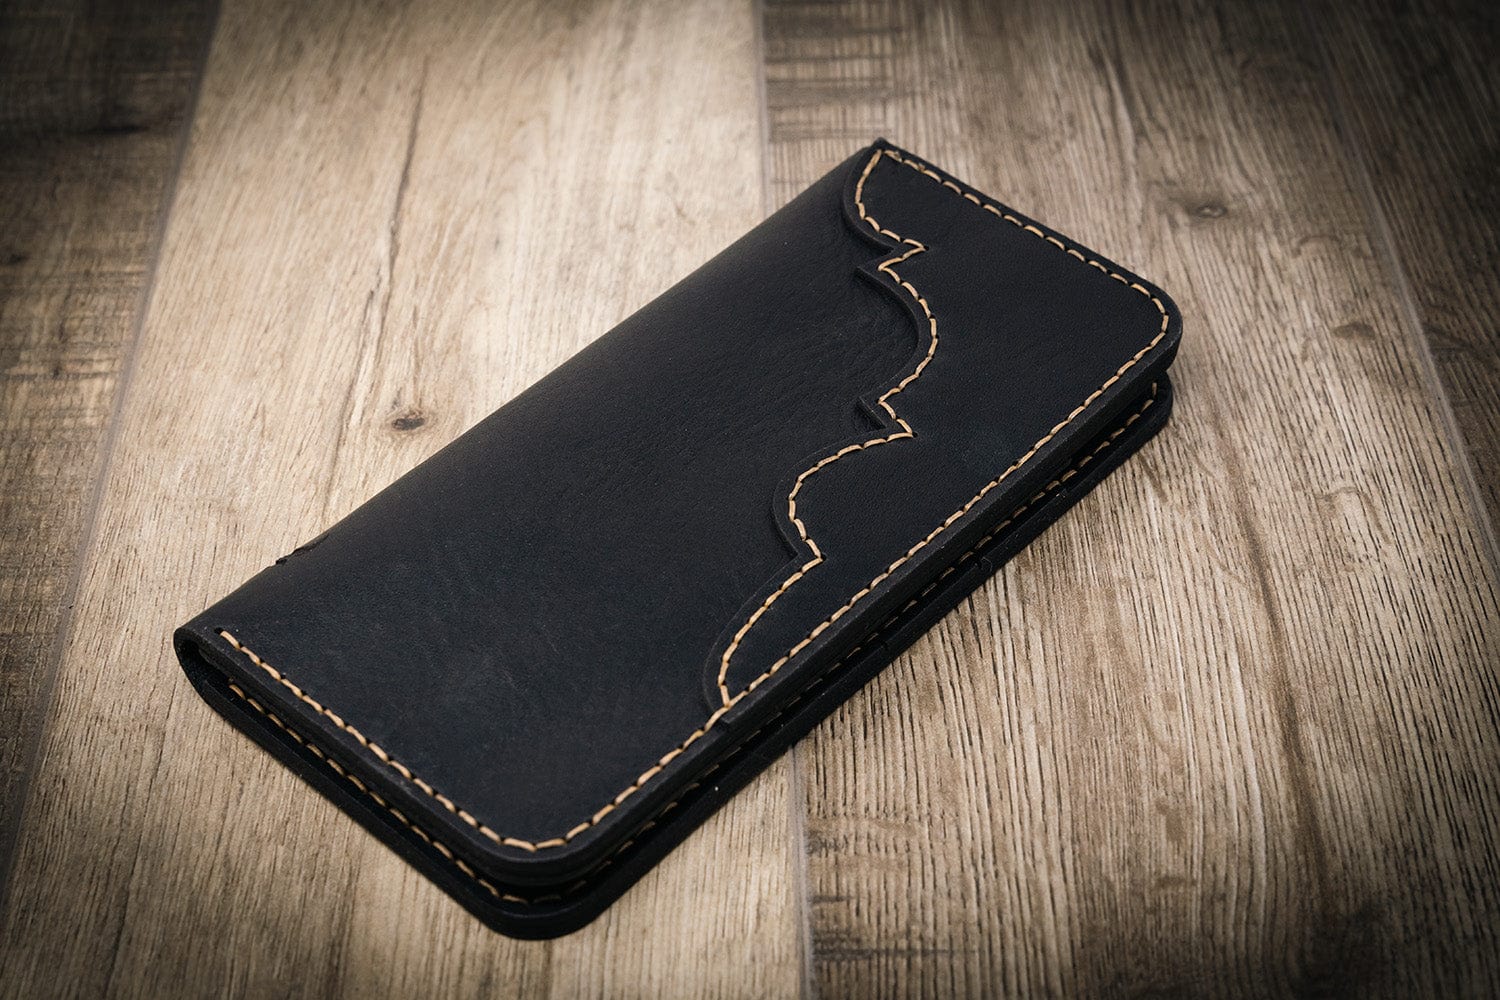 Long Wallet - The Houstonian - Brandy – Bull Sheath Leather